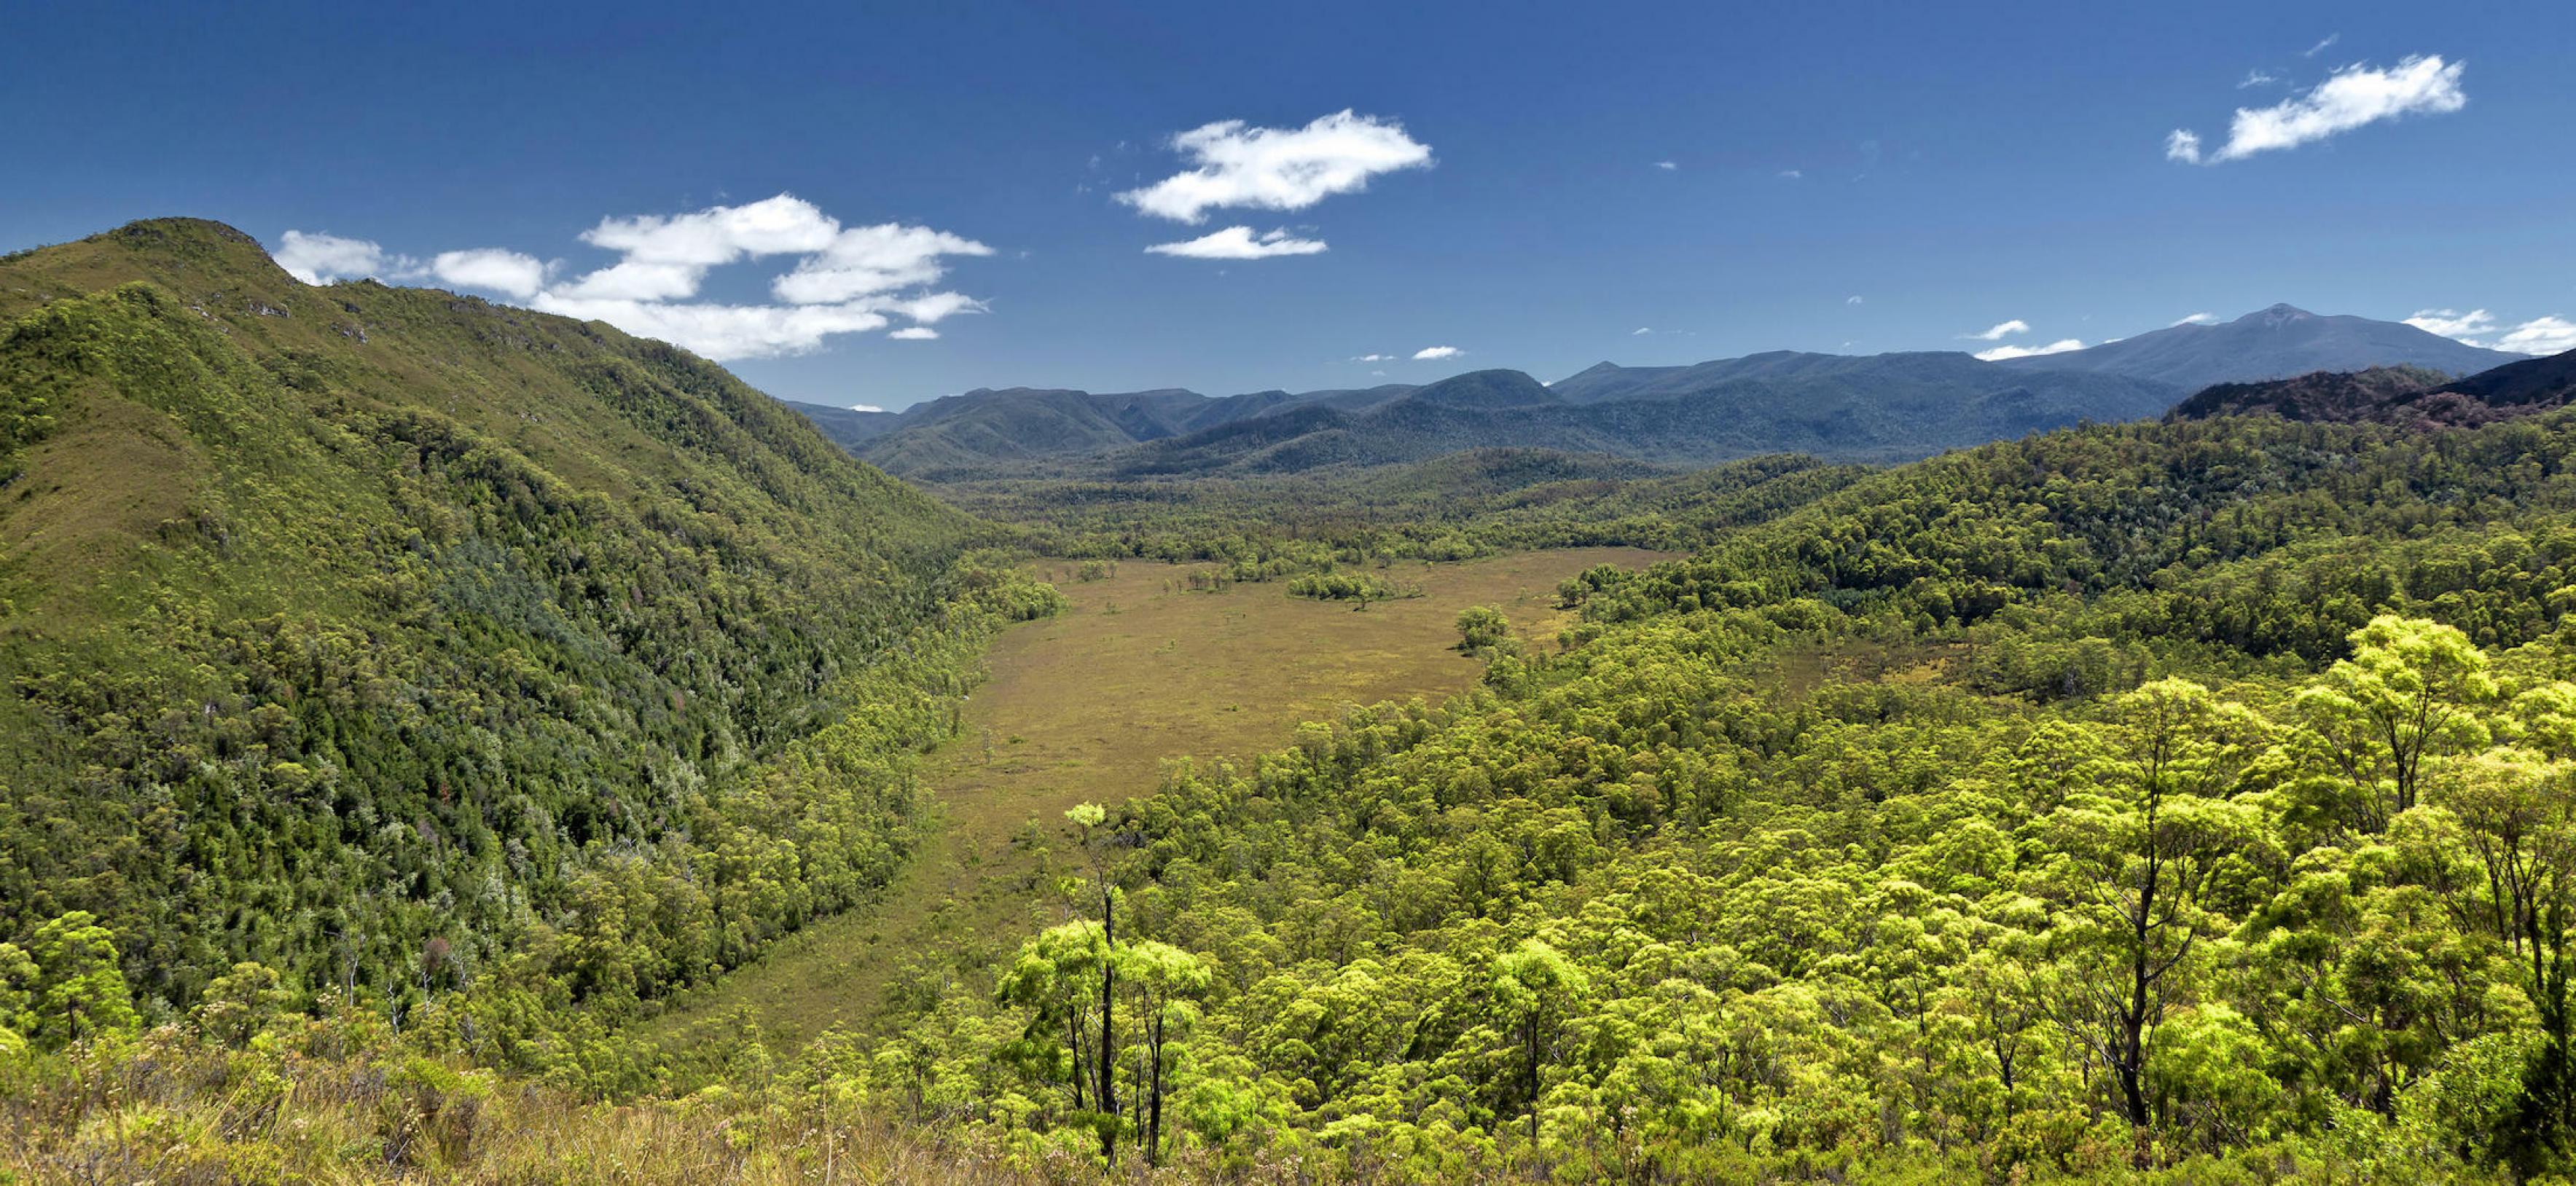 Das sattgrüne Bild zeigt eine hügelige Regenwaldlandschaft mit einer großen Lichtung in der Mitte bei sonnigem Wetter.